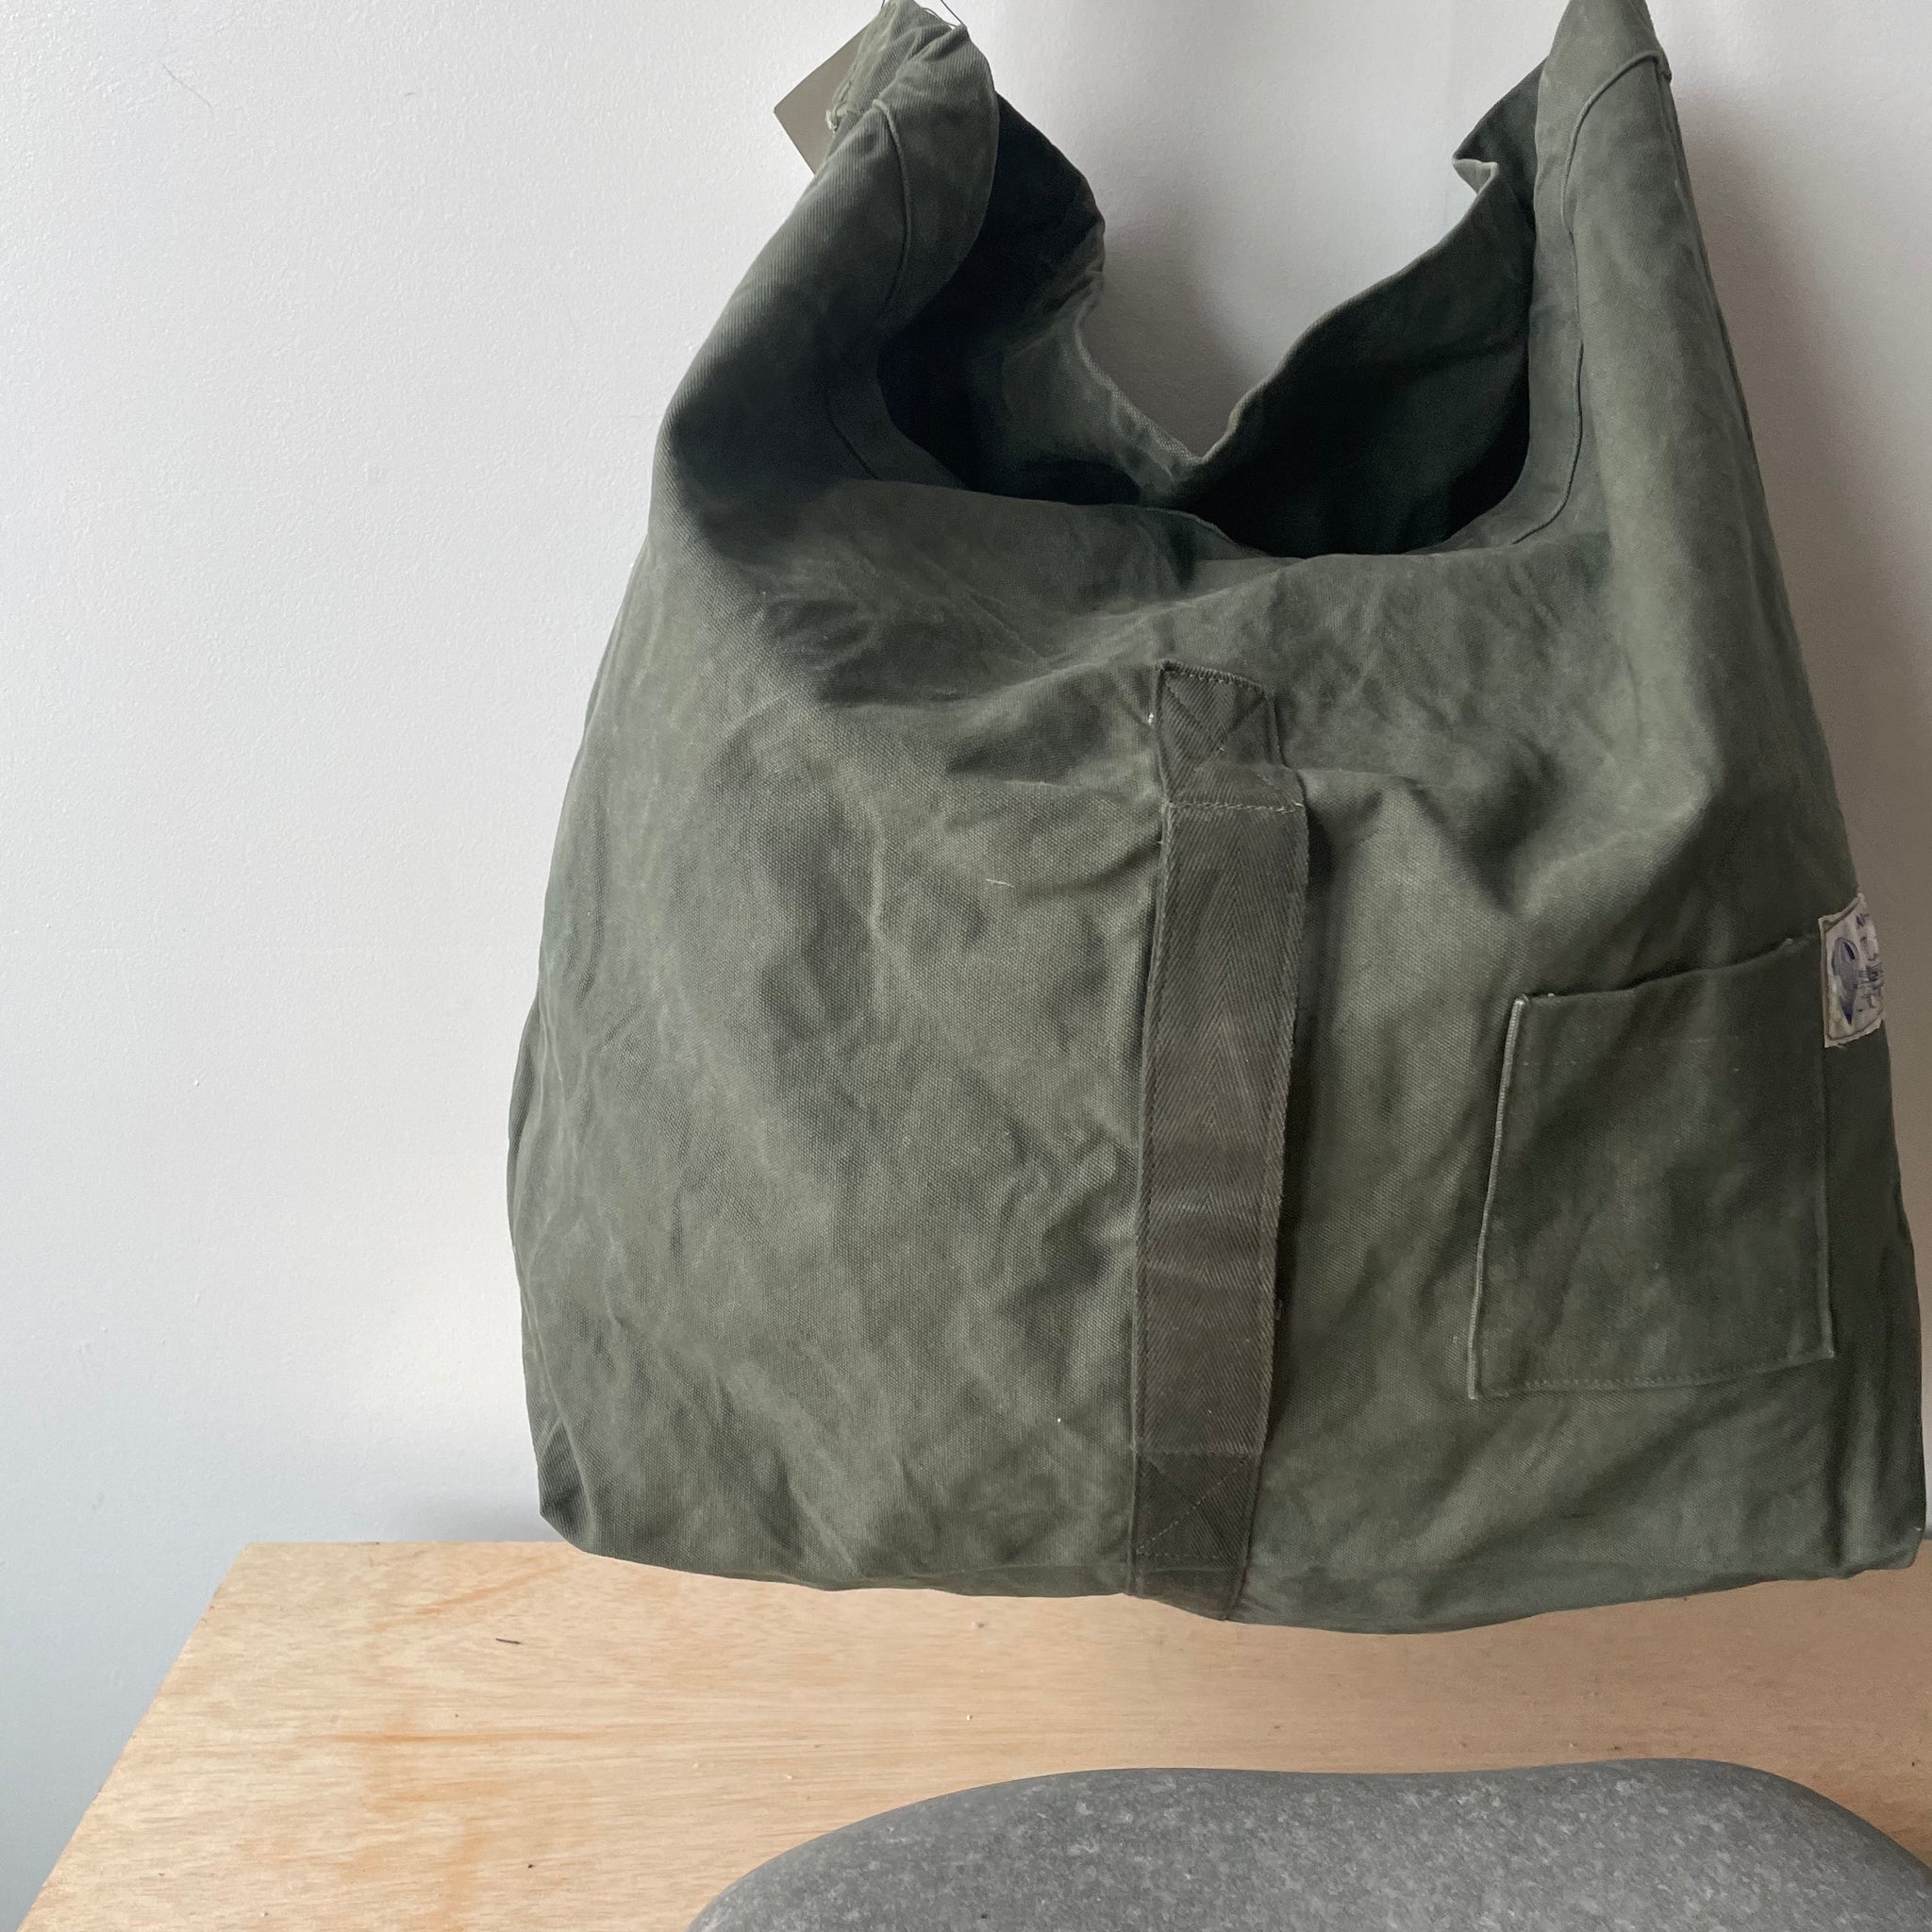 PVC School Bag Material at Rs 100/kg | Bag Fabric in Sujangarh | ID:  26318703355